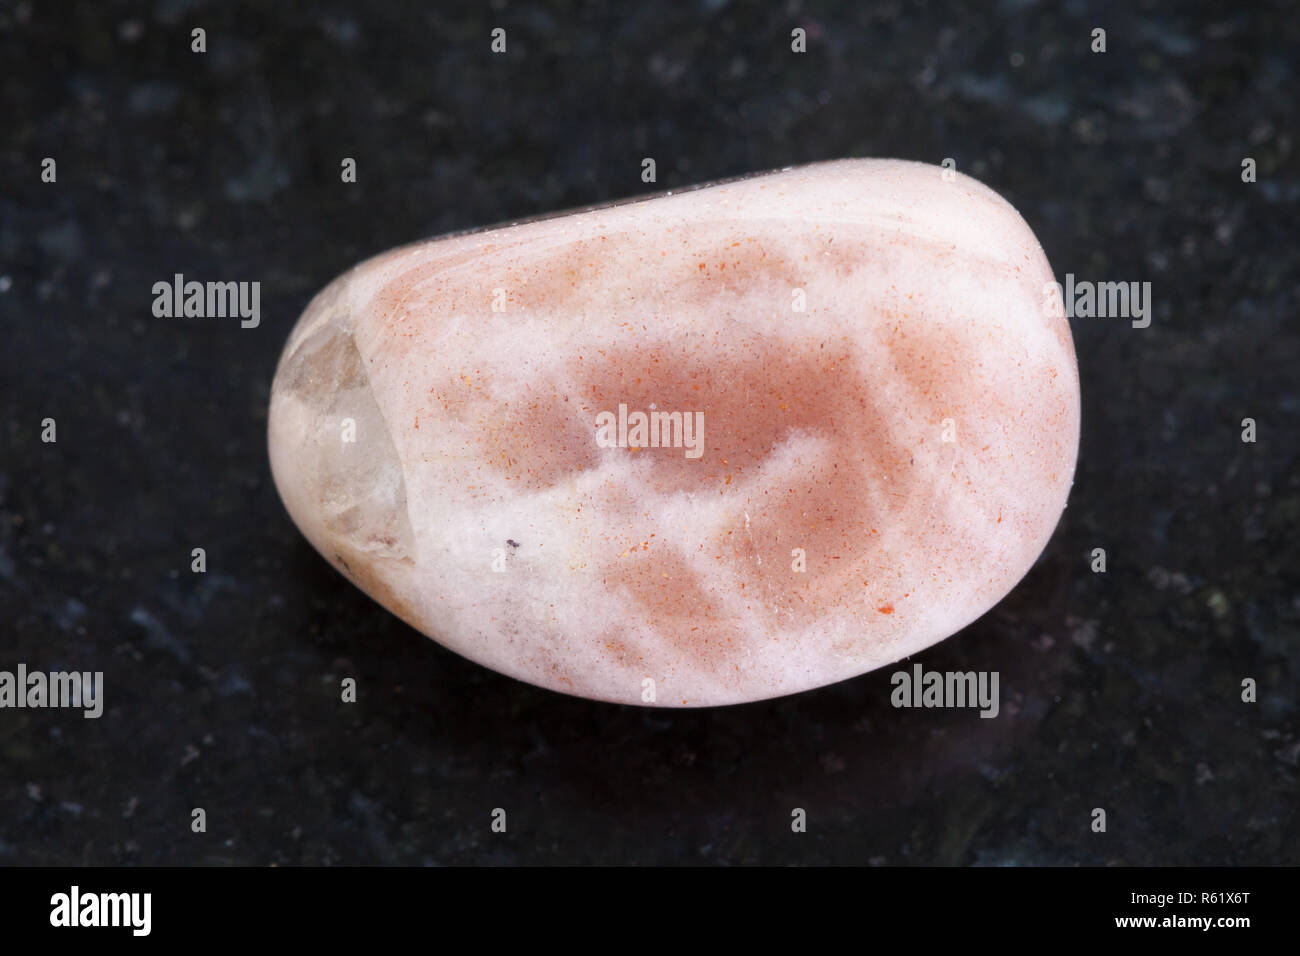 tumbled moonstone gemstone on dark background Stock Photo